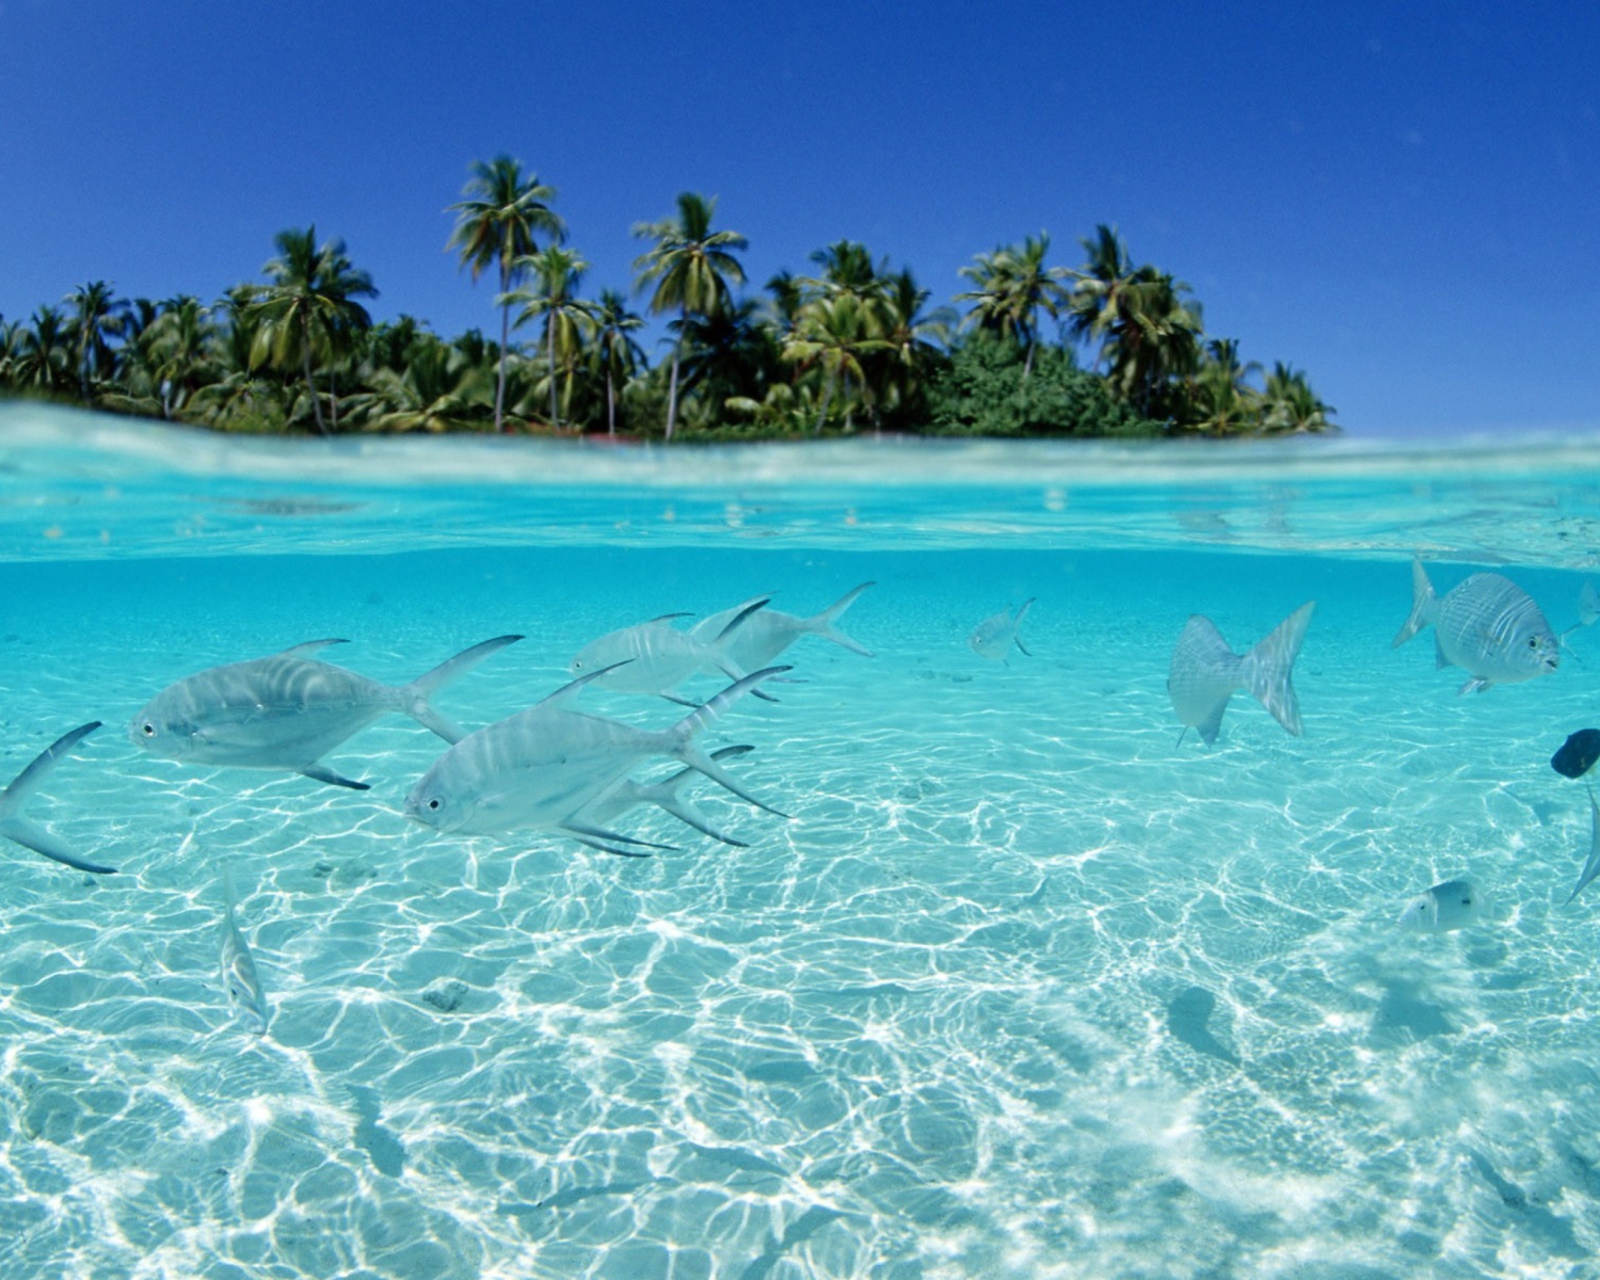 Обои Tropical Island And Fish In Blue Sea 1600x1280